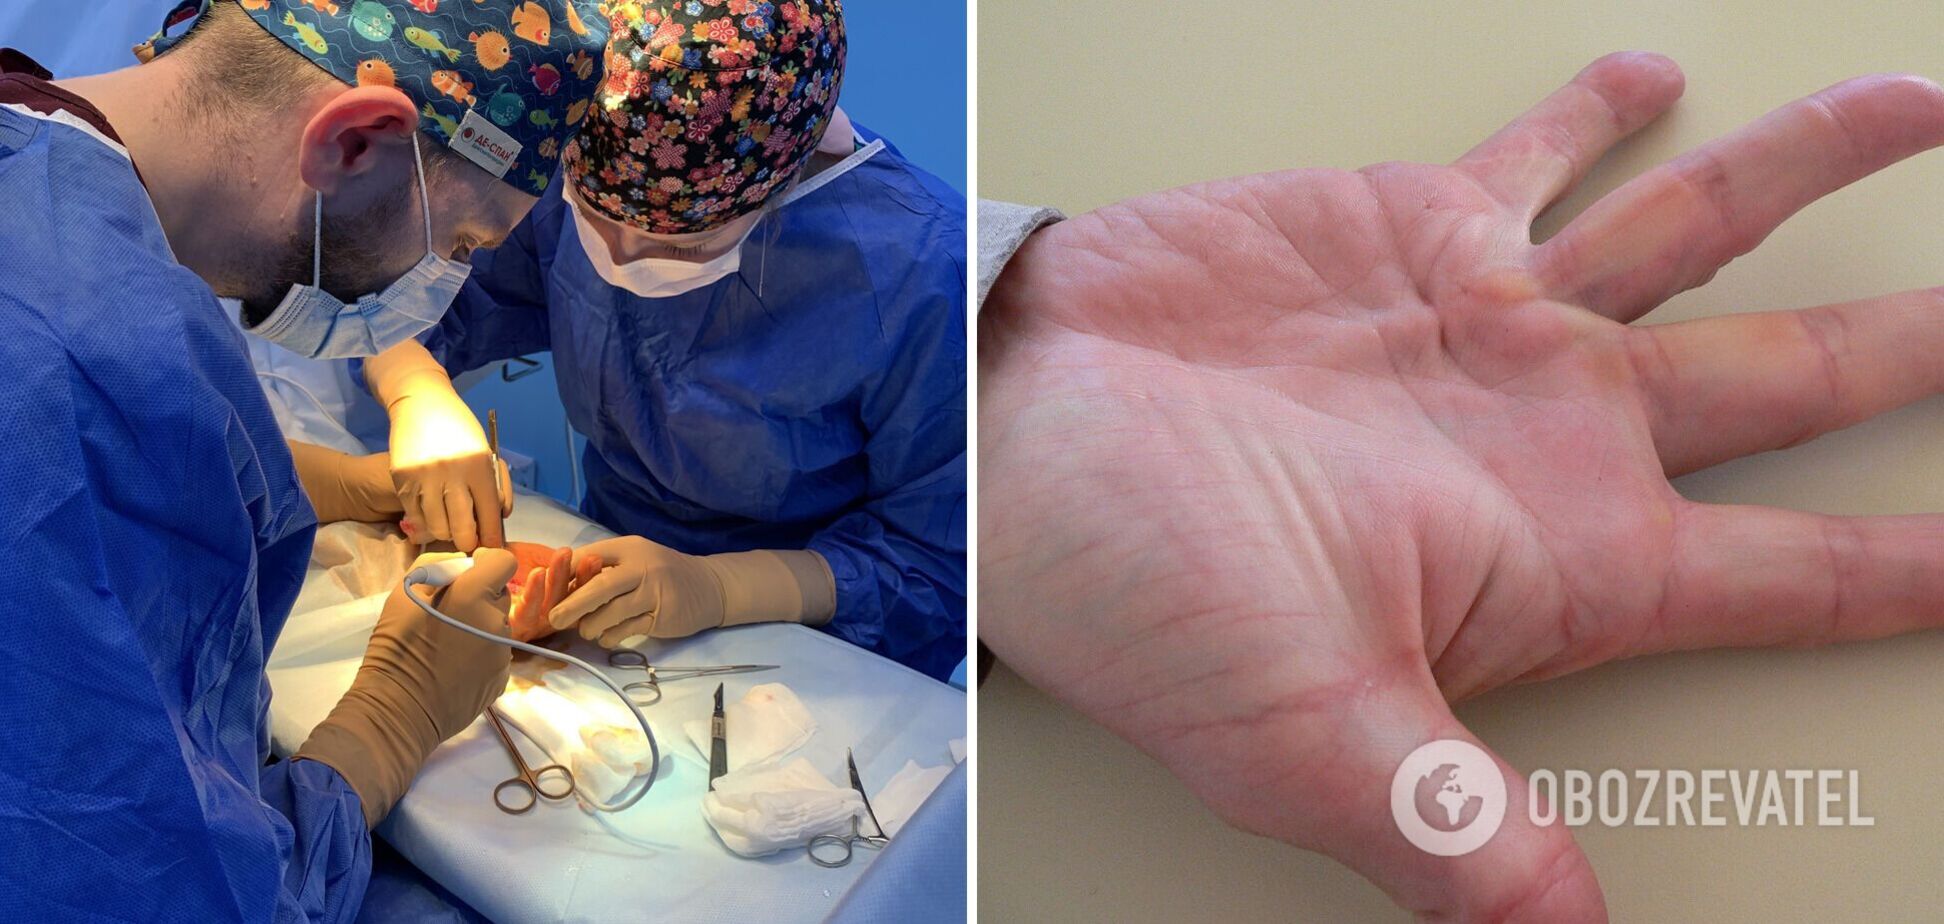 Багато хто звертається занадто пізно: лікар розповів про небезпечну хворобу – руки стають як у 'Людини-павука'